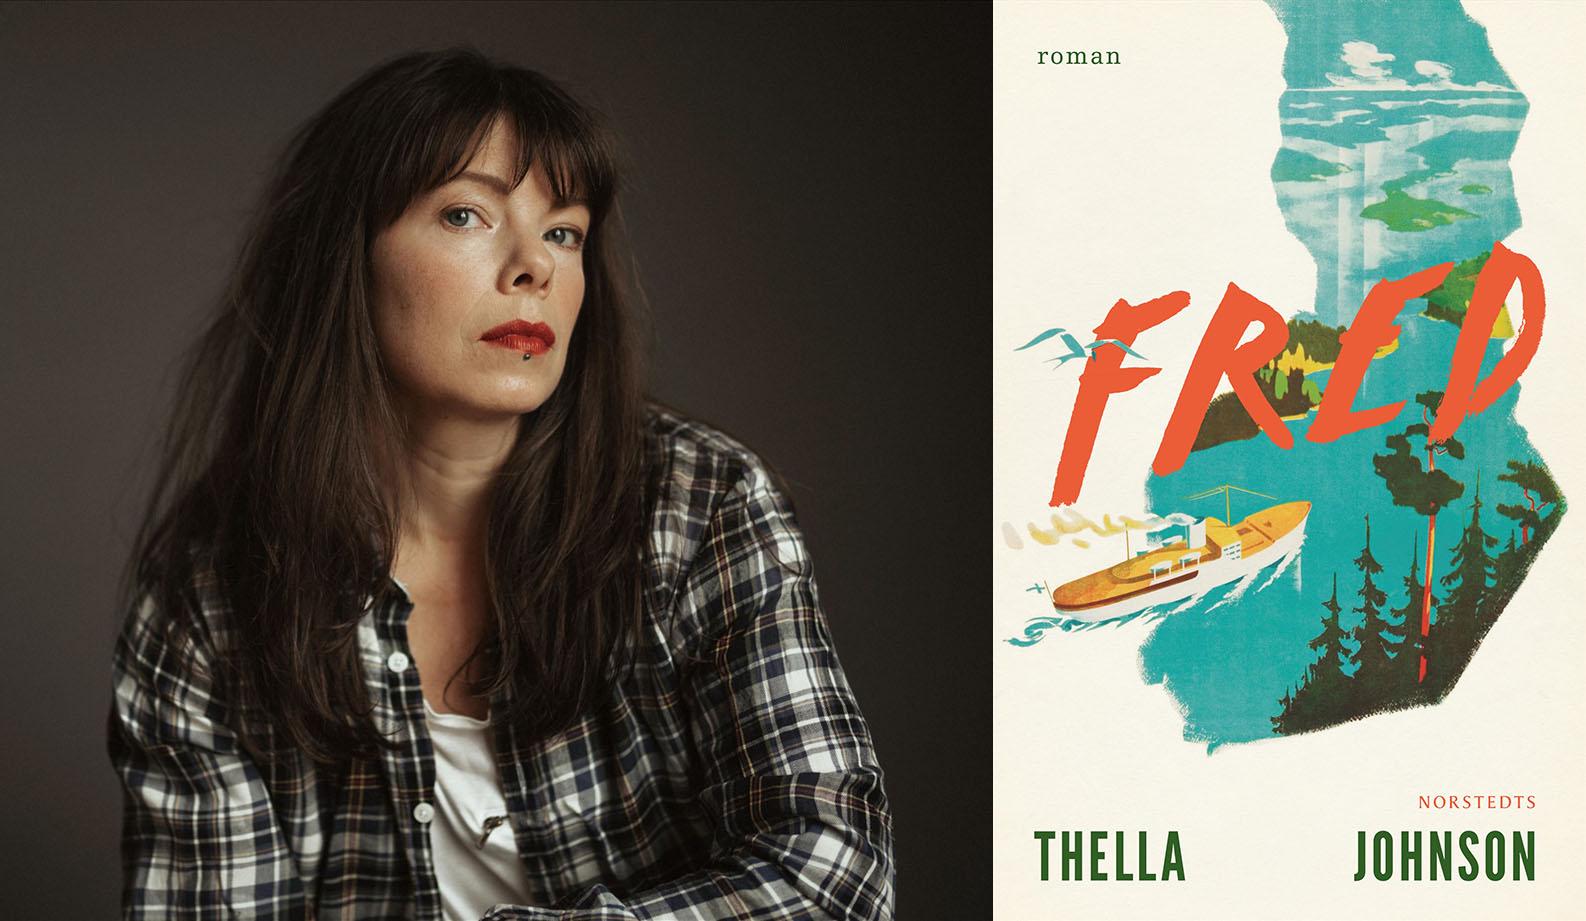 Thella Johnson (född 1979) är journalist och musikartist och debuterar som skönlitterär författare med romanen ”Fred”.